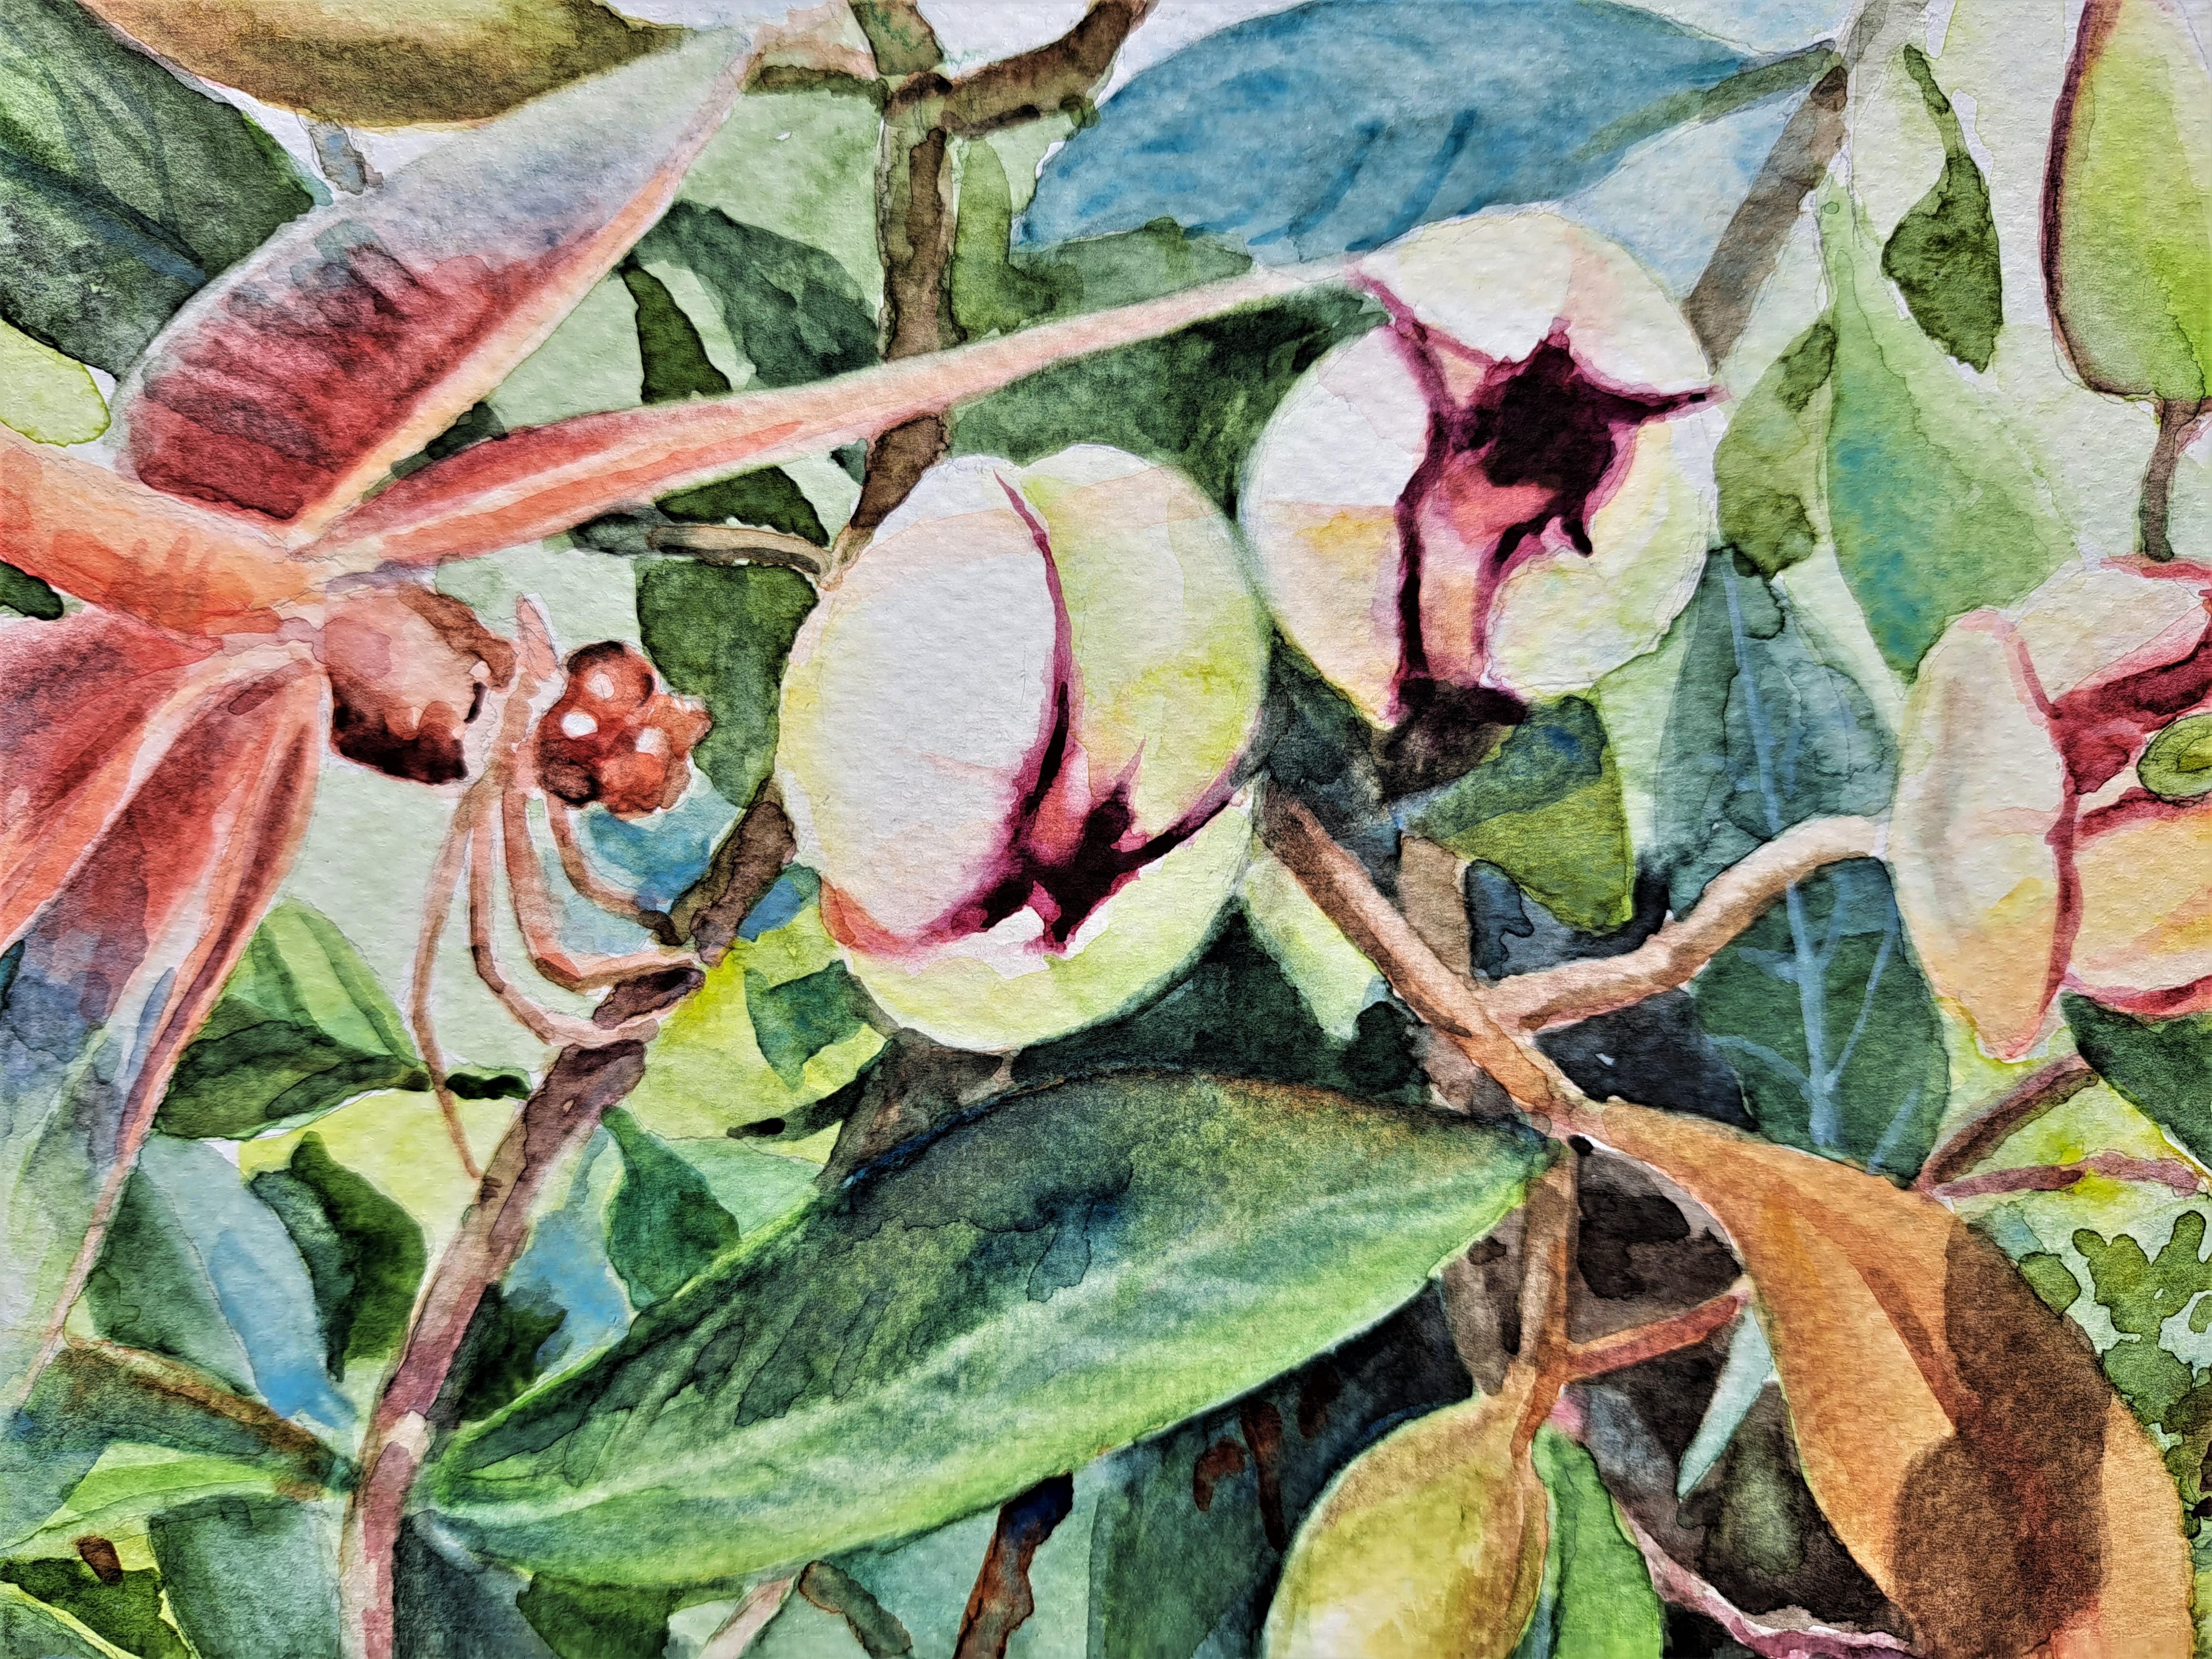 <p>Kommentare des Künstlers<br>Die Künstlerin Catherine McCargar zeigt eine scharlachrote Libelle, die auf dem Ast eines Magnolienstrauchs landet. Sie fängt den flüchtigen Moment ein, in dem er den Nektar der Blüte schlürft. Seine roten Flügel